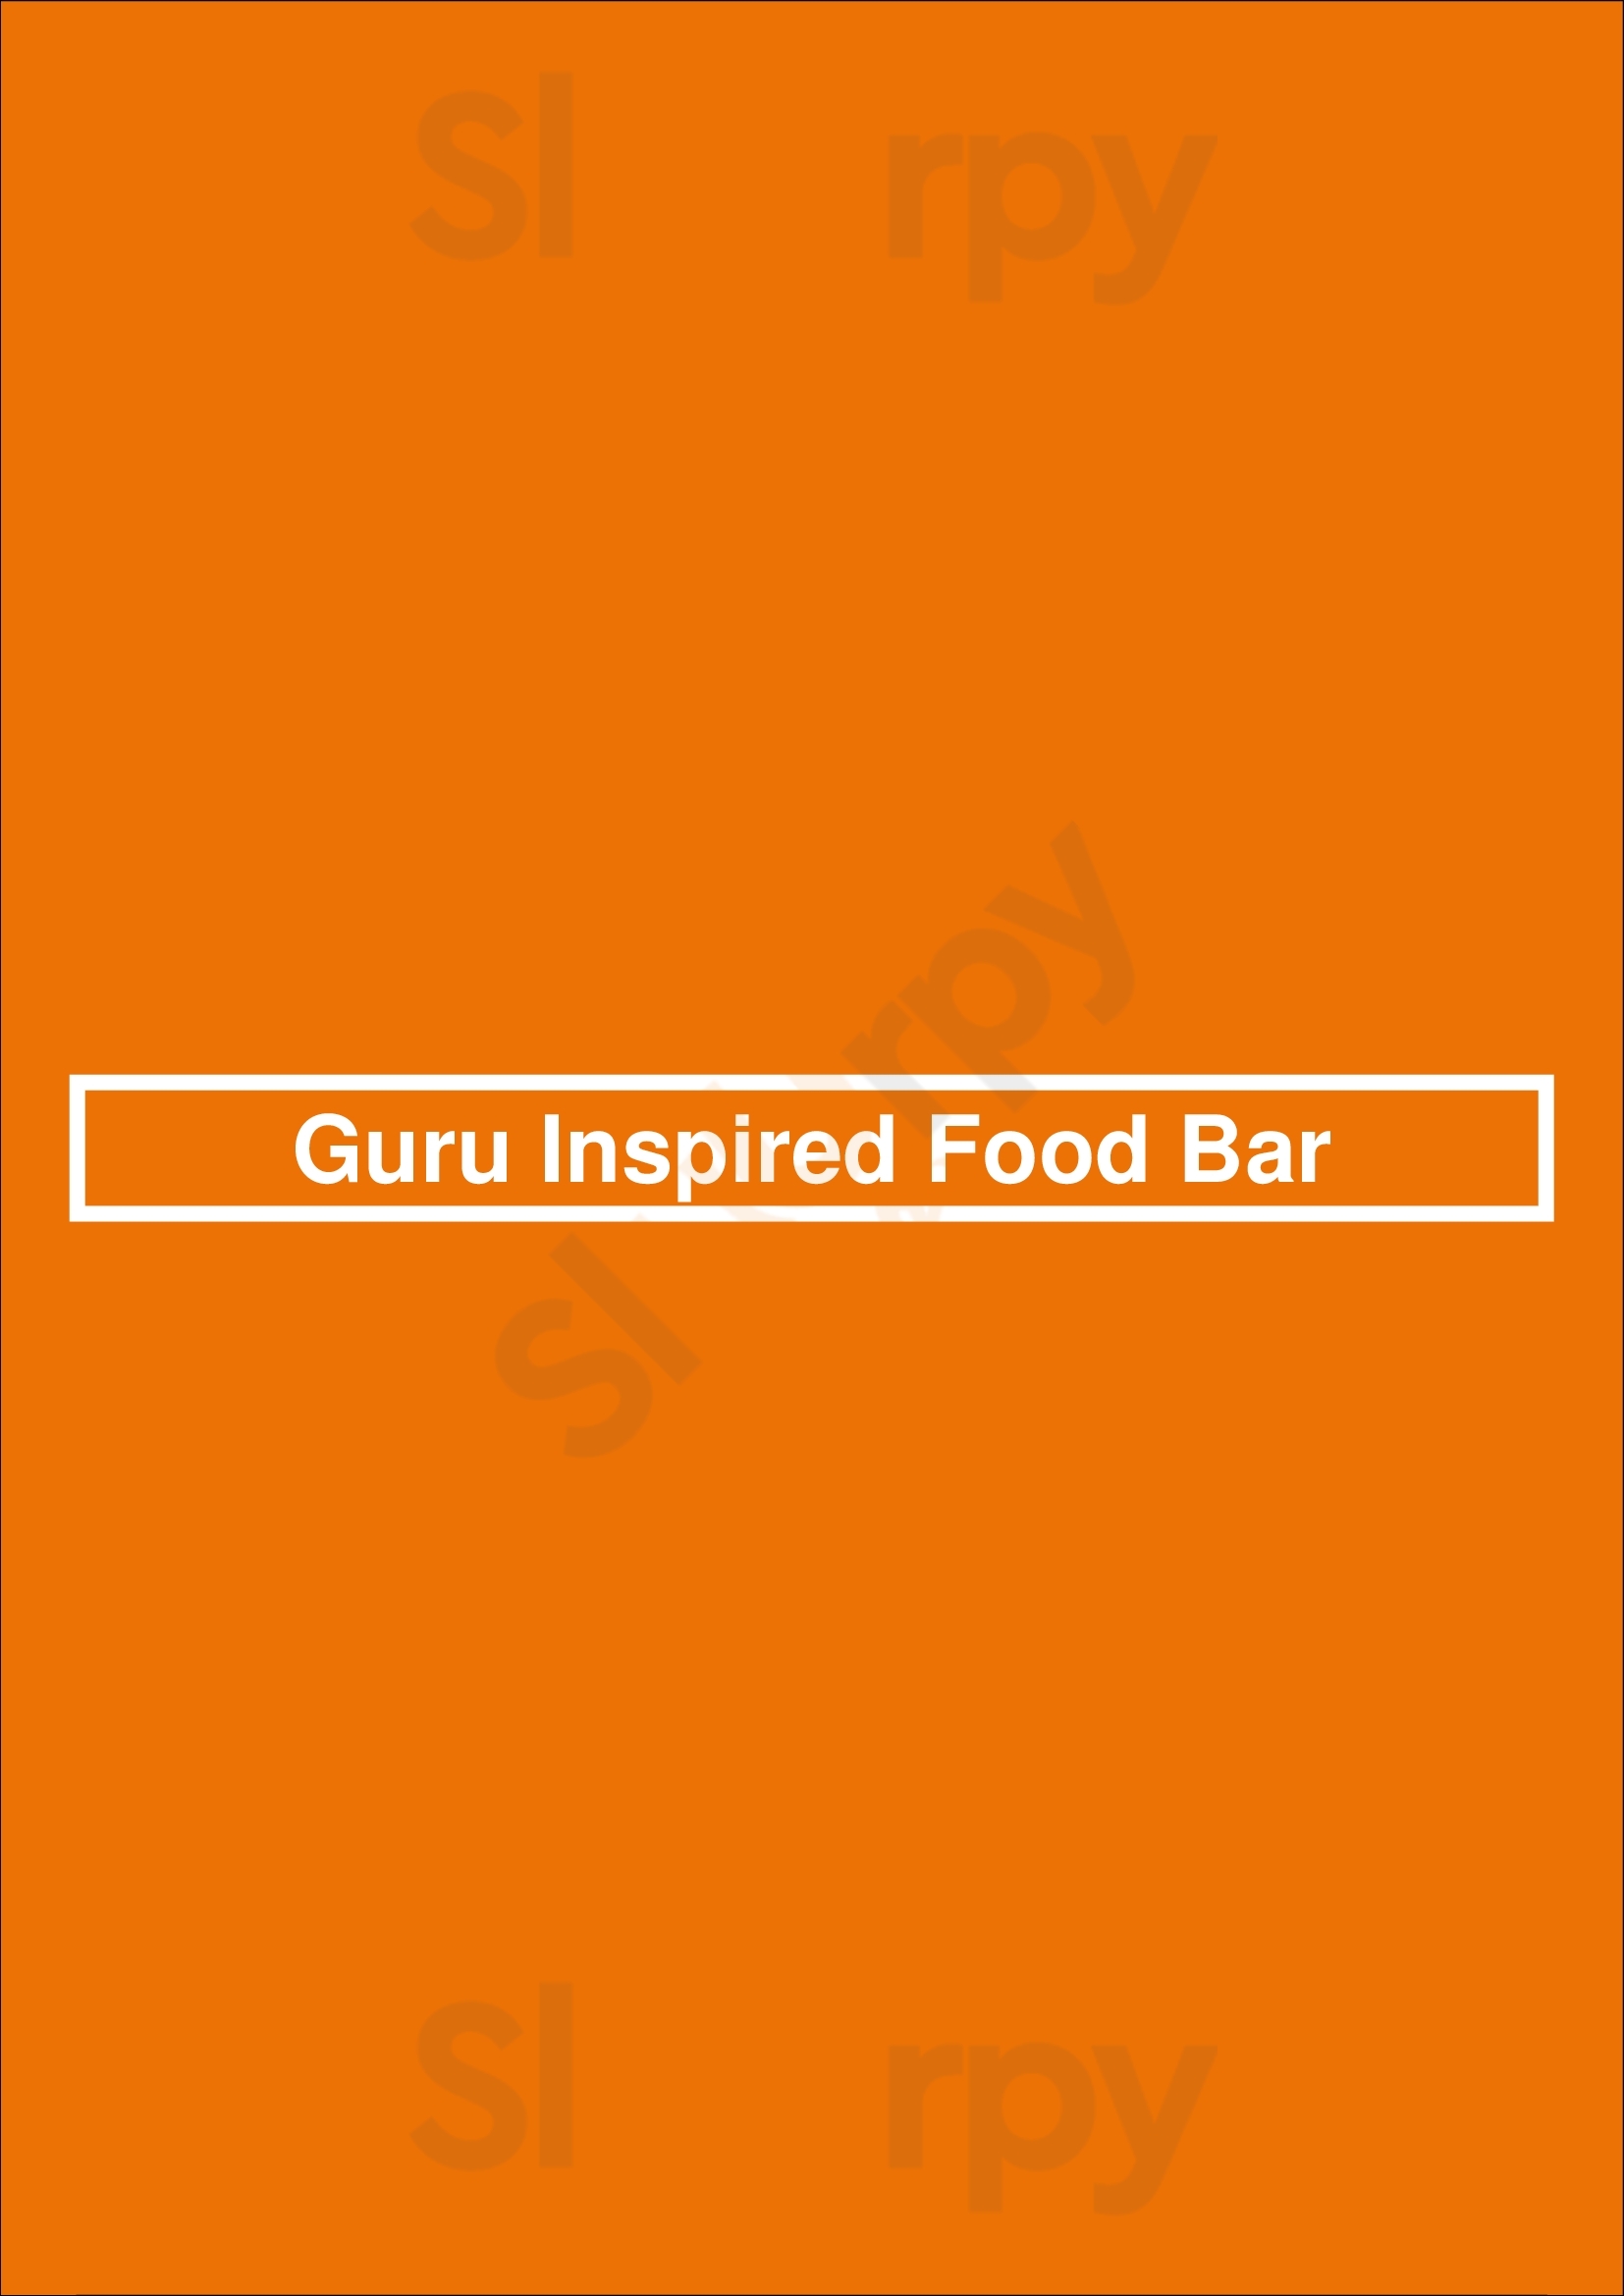 Guru Inspired Food Bar Ottawa Menu - 1